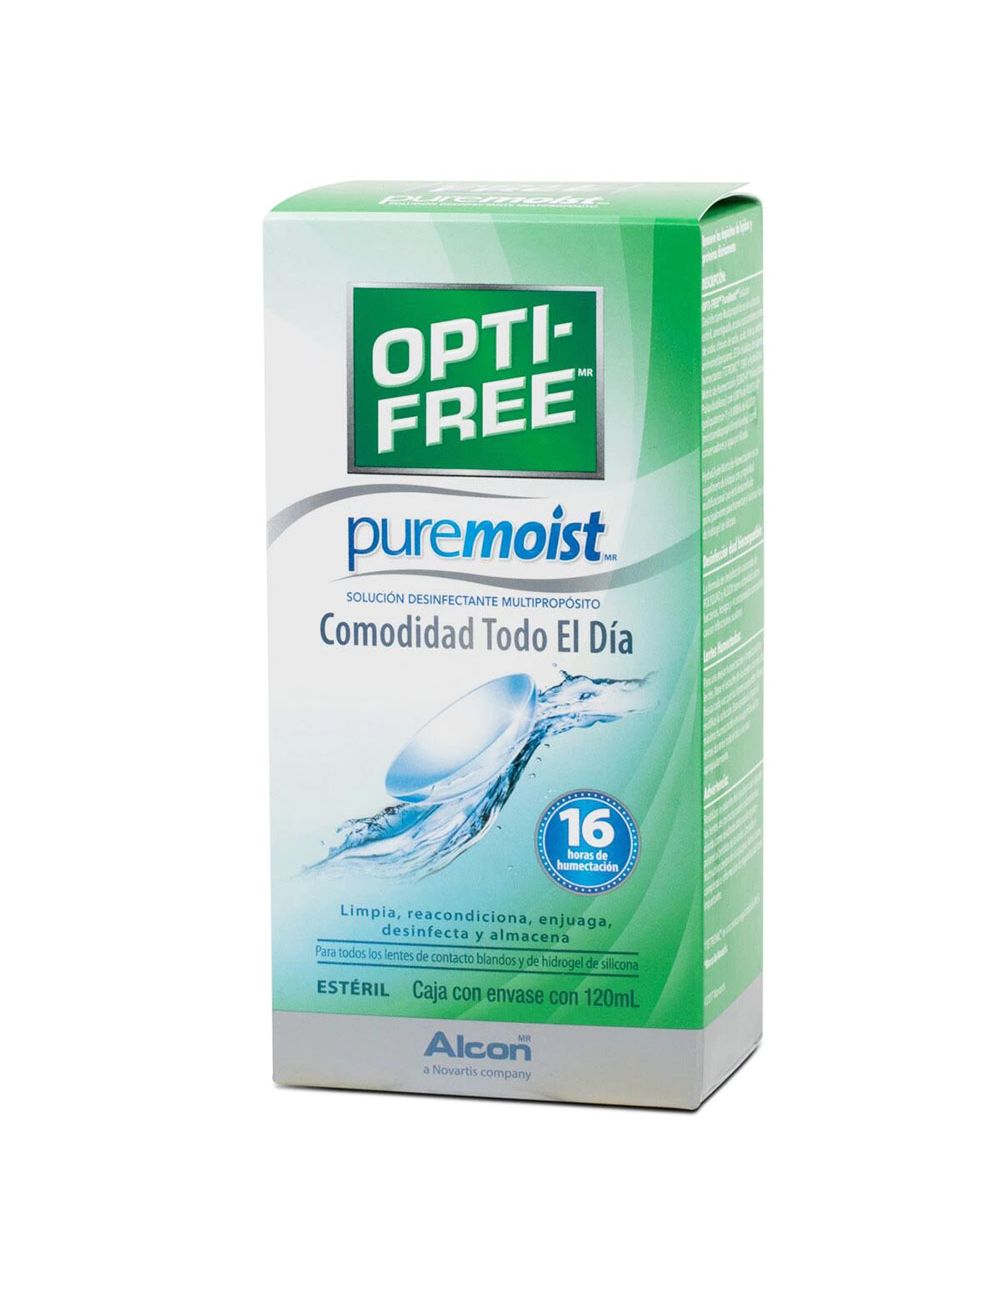 Opti-Free Pure Moist Solución Desinfectante Multipropósito Con 120 mL